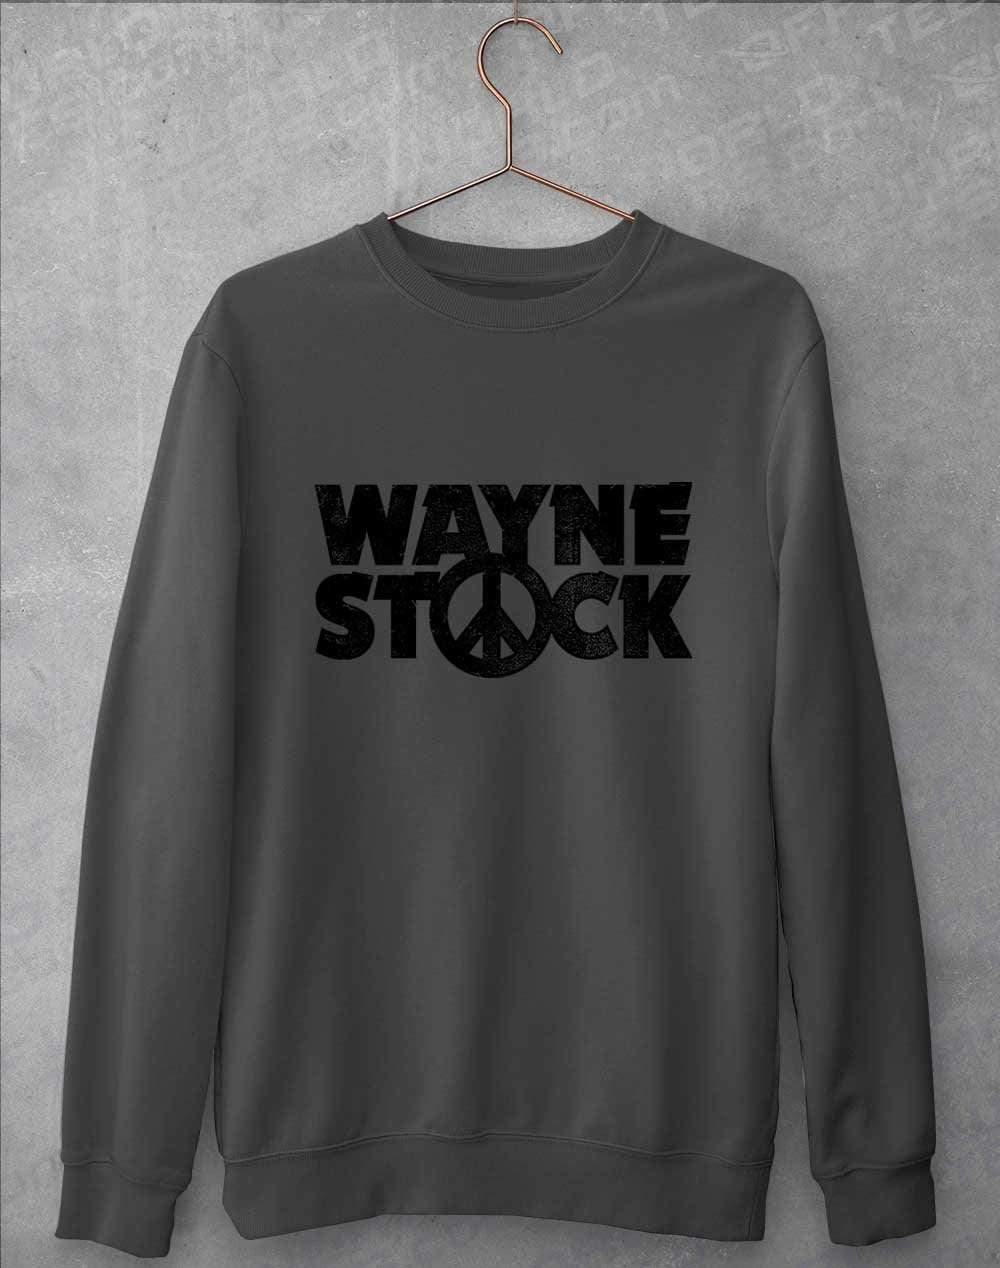 Waynestock Sweatshirt S / Charcoal  - Off World Tees